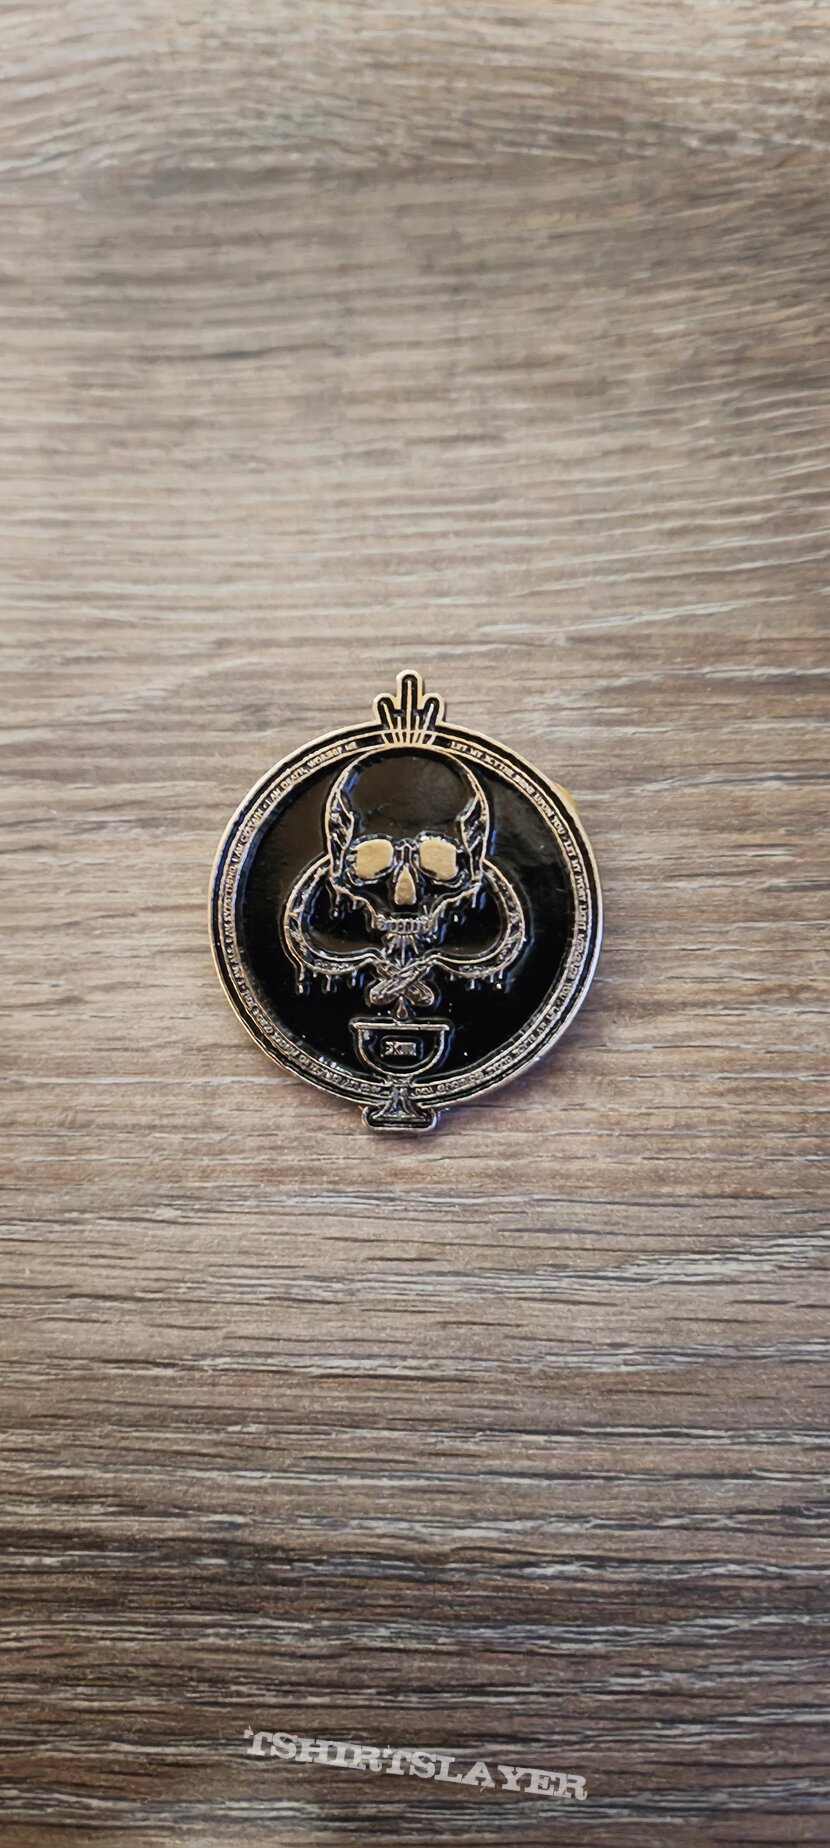 Ritual Death pin